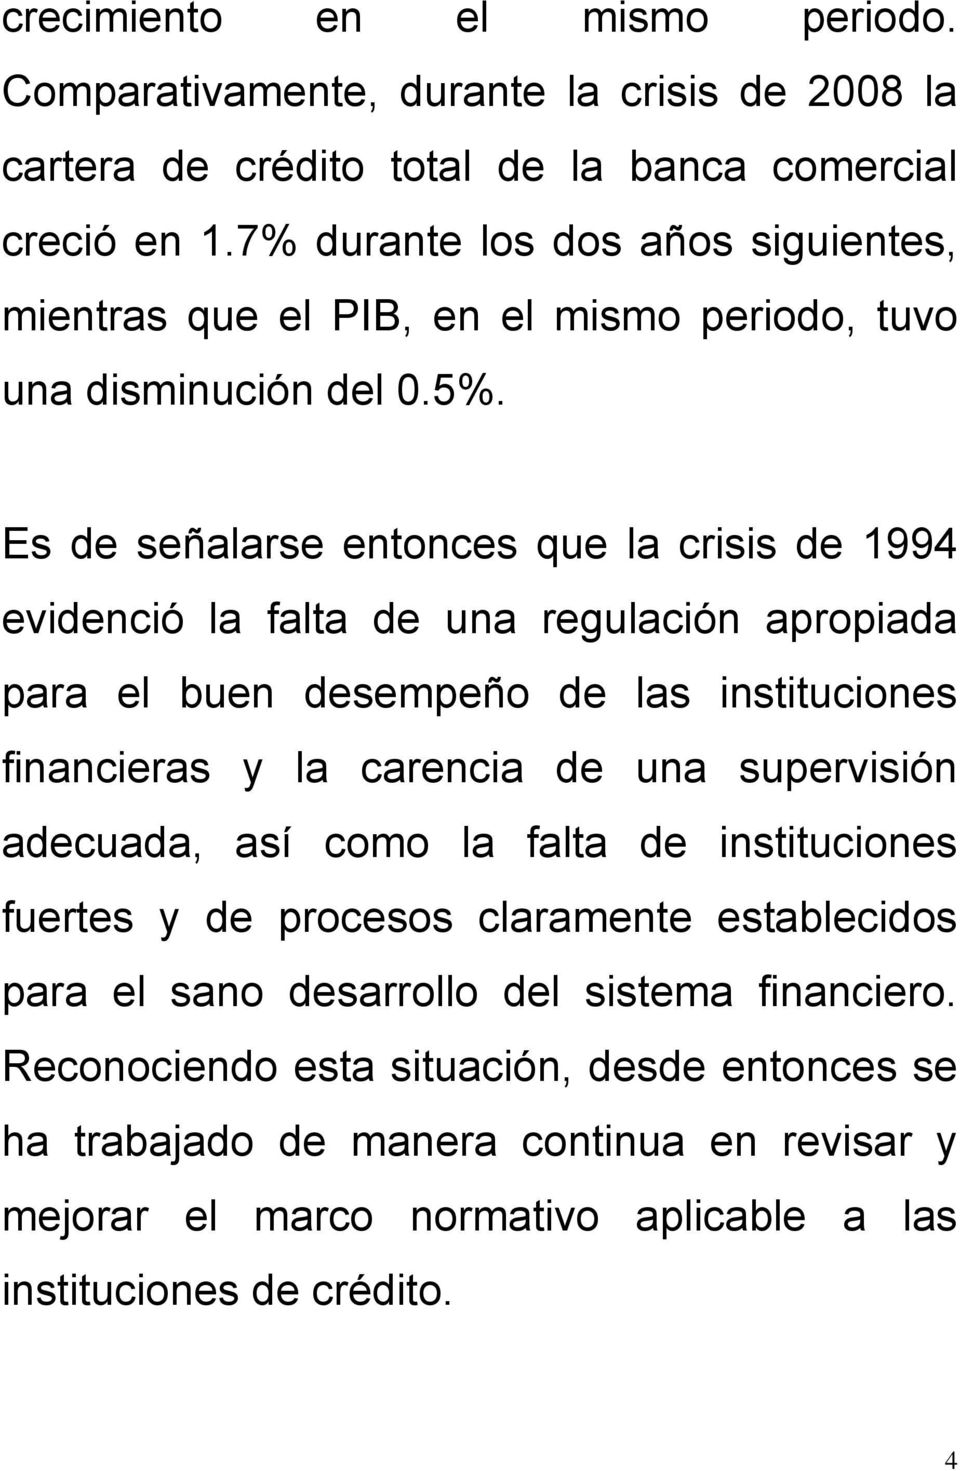 Es de señalarse entonces que la crisis de 1994 evidenció la falta de una regulación apropiada para el buen desempeño de las instituciones financieras y la carencia de una supervisión